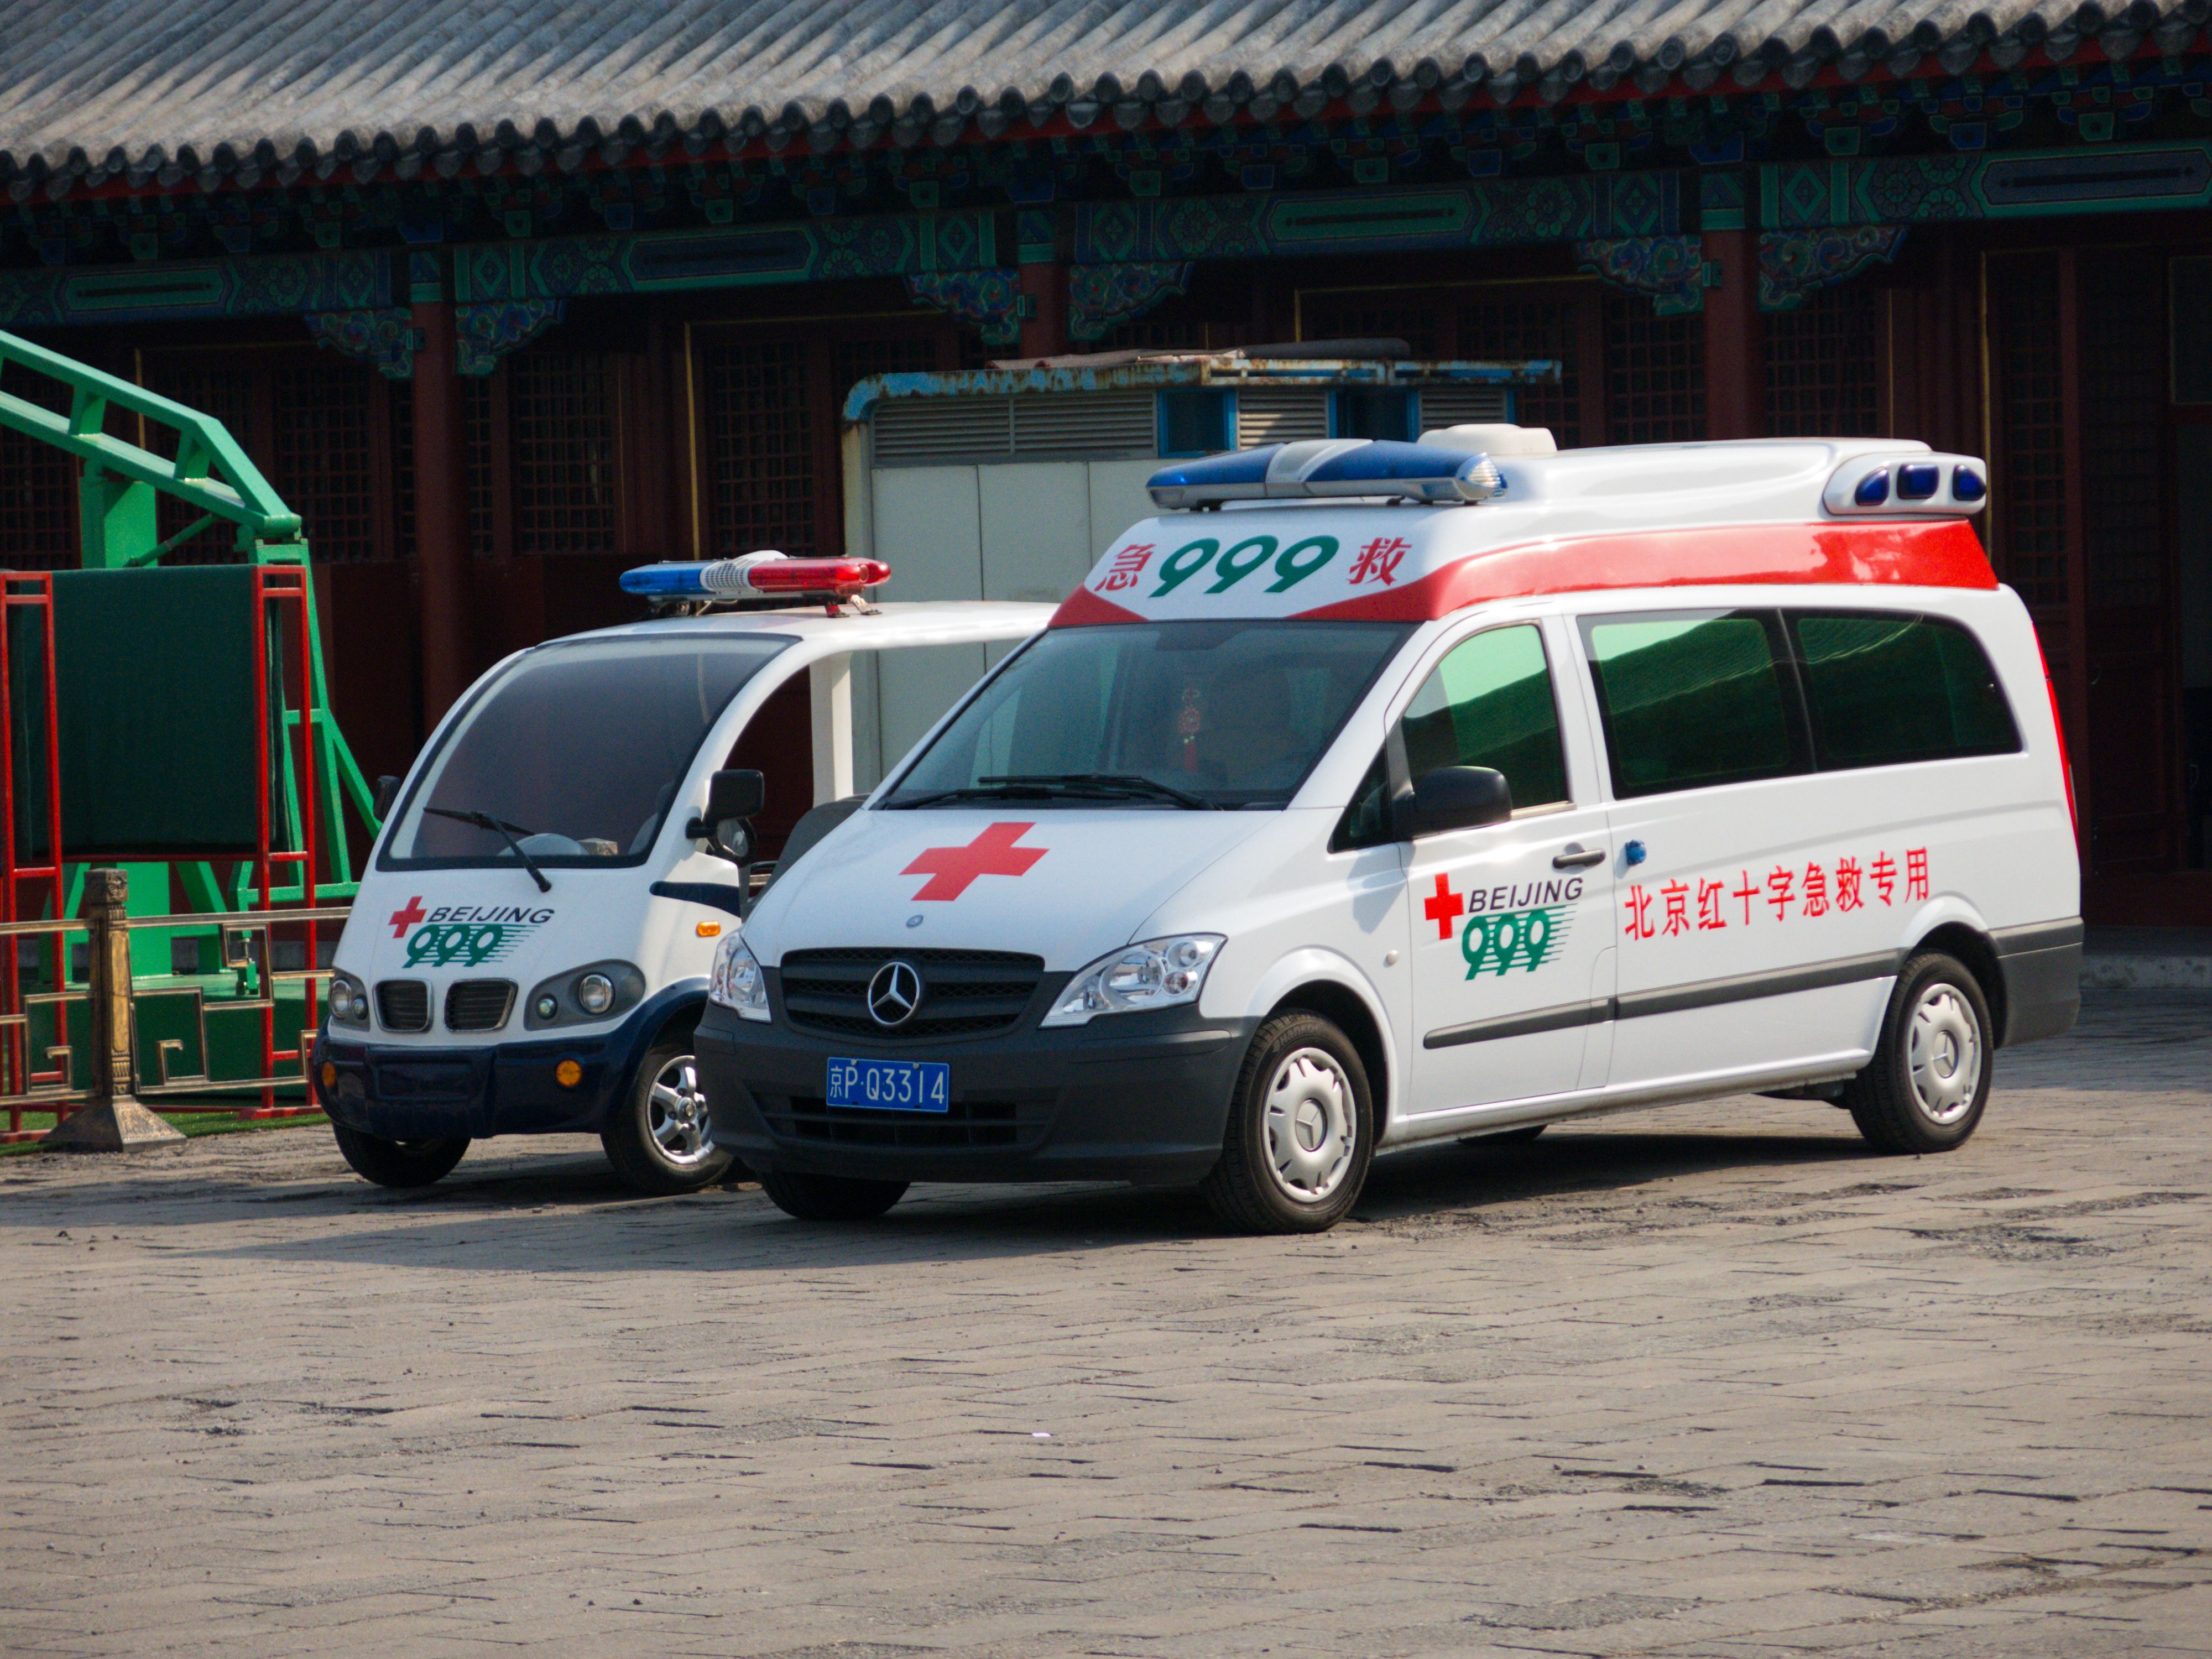 Ambulancia China / Wikimedia Commons